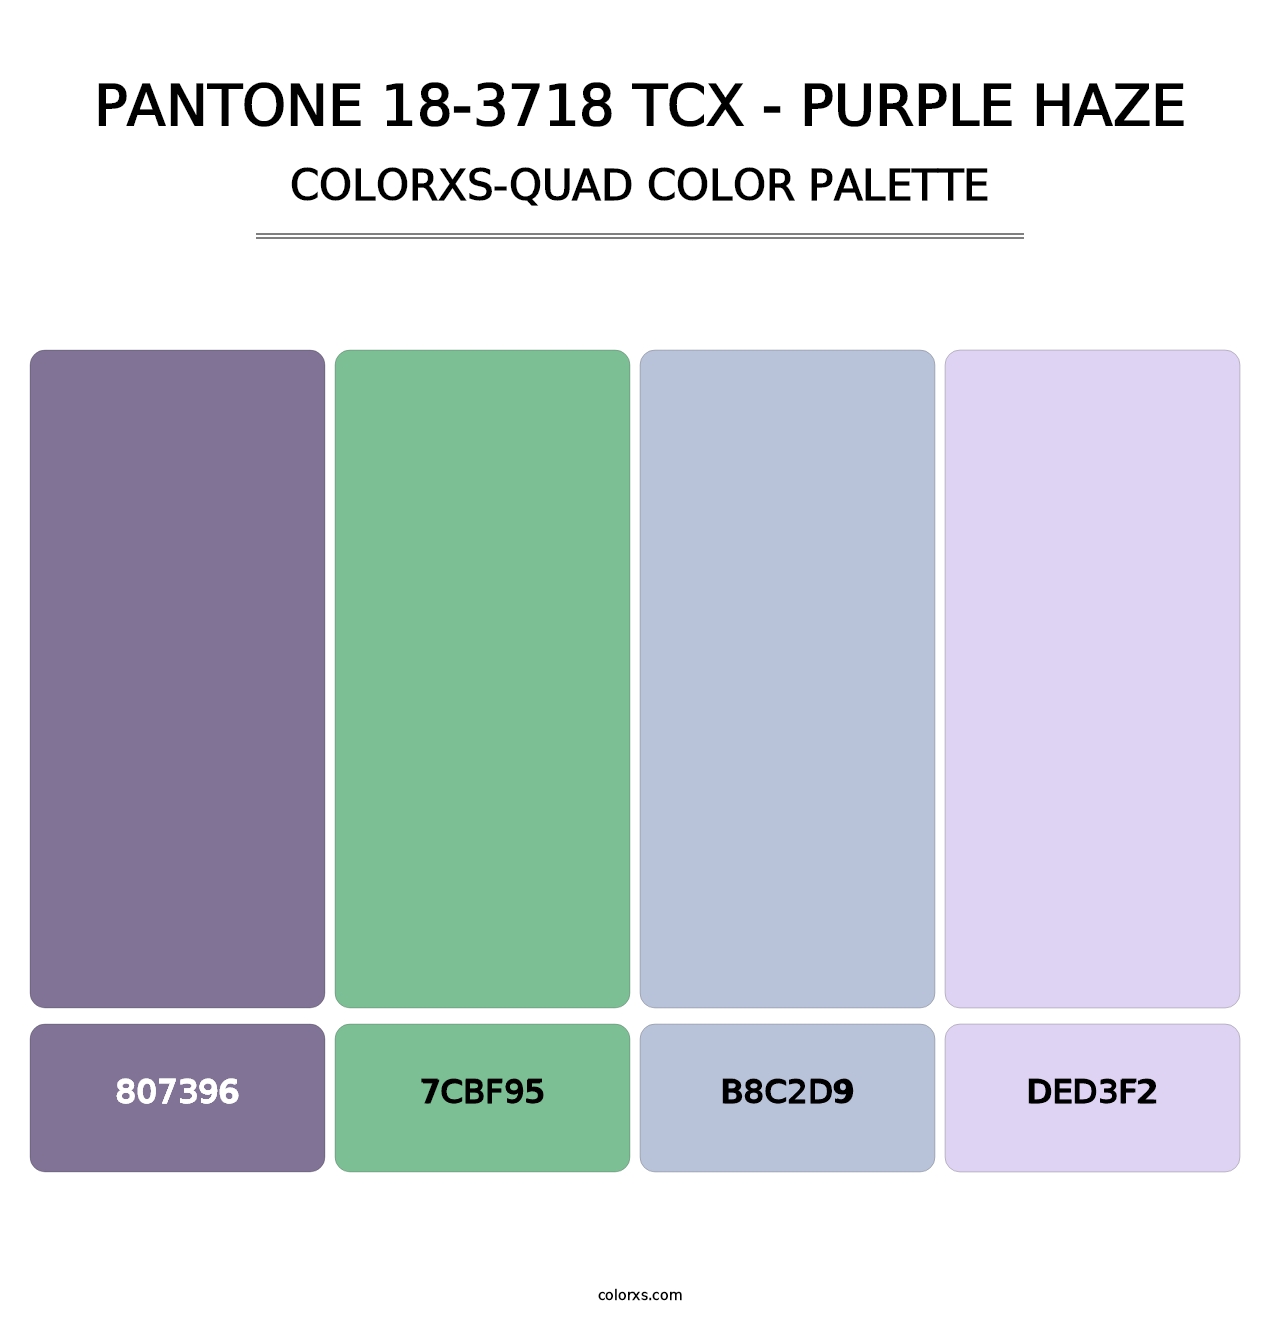 PANTONE 18-3718 TCX - Purple Haze - Colorxs Quad Palette